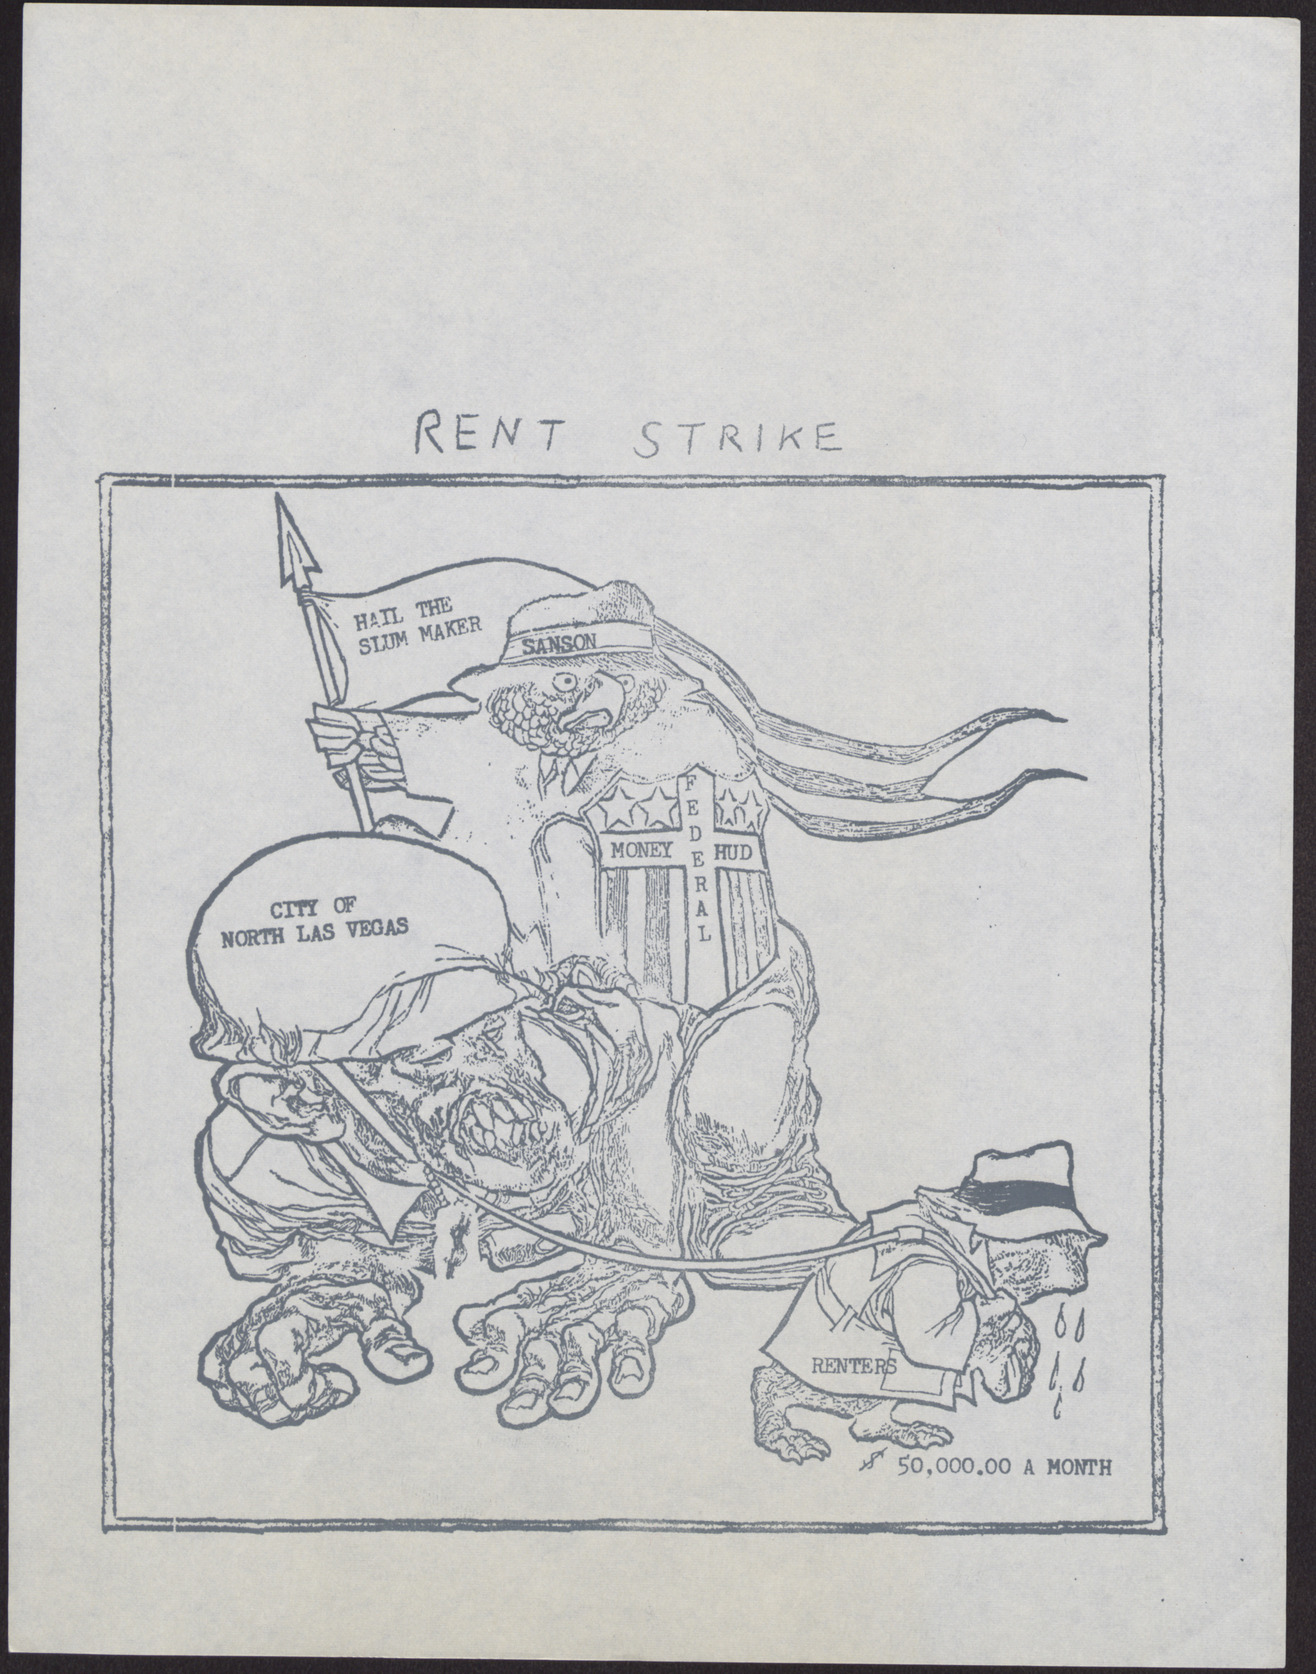 Copy of a political cartoon regarding a rent strike, no date